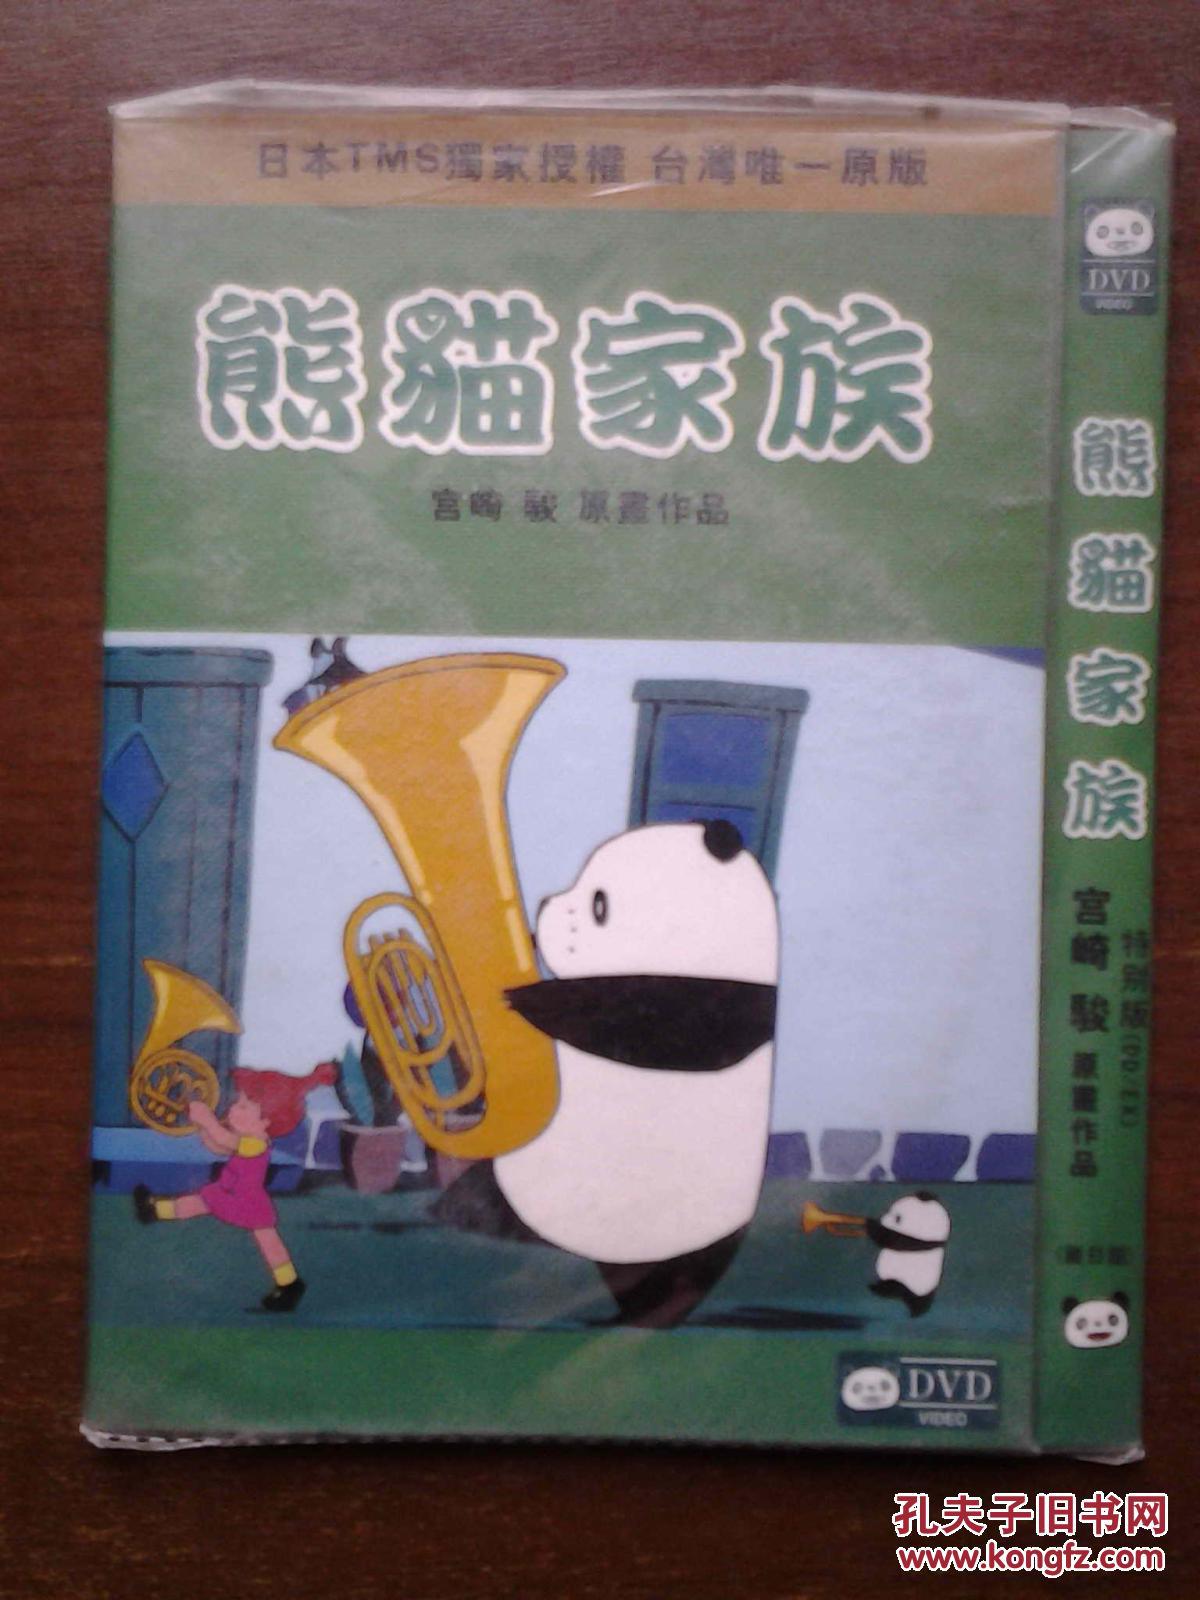 【图】DVD 熊猫家族 宫崎骏_价格:15.00